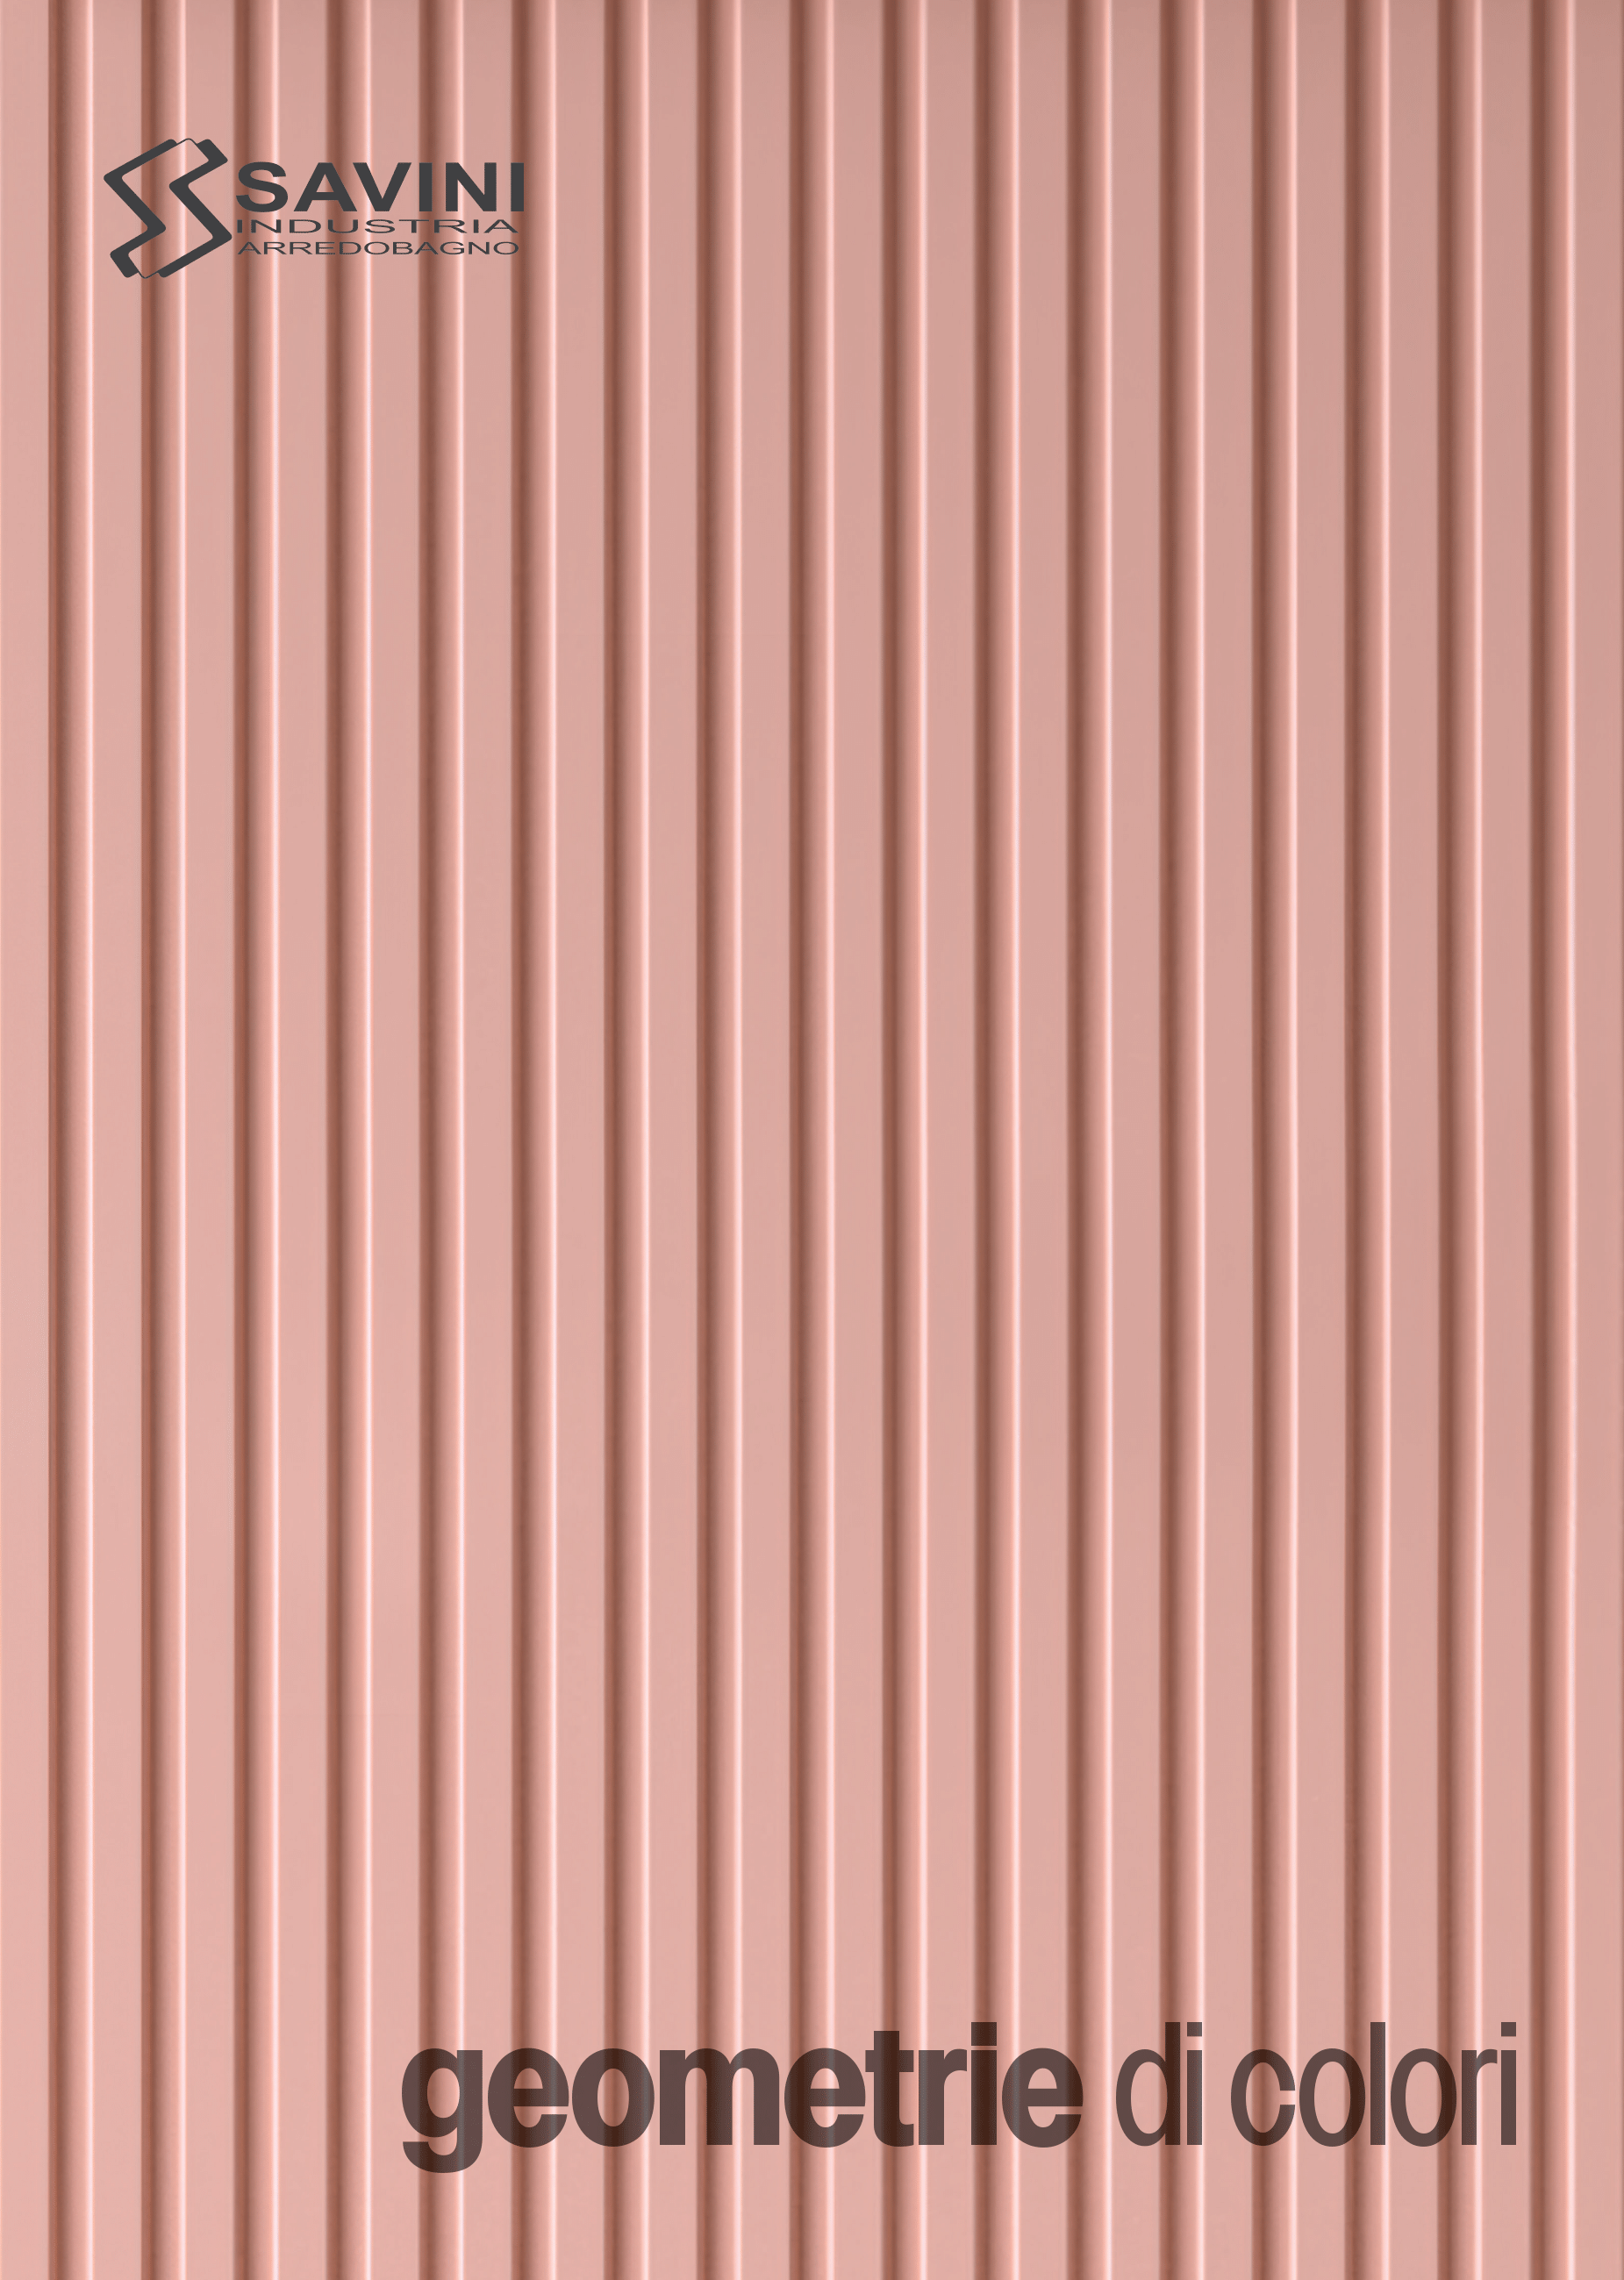 Copertina del Catalogo Geometrie di Colori con sfondo un motivo cannettato verticale rosa opaco